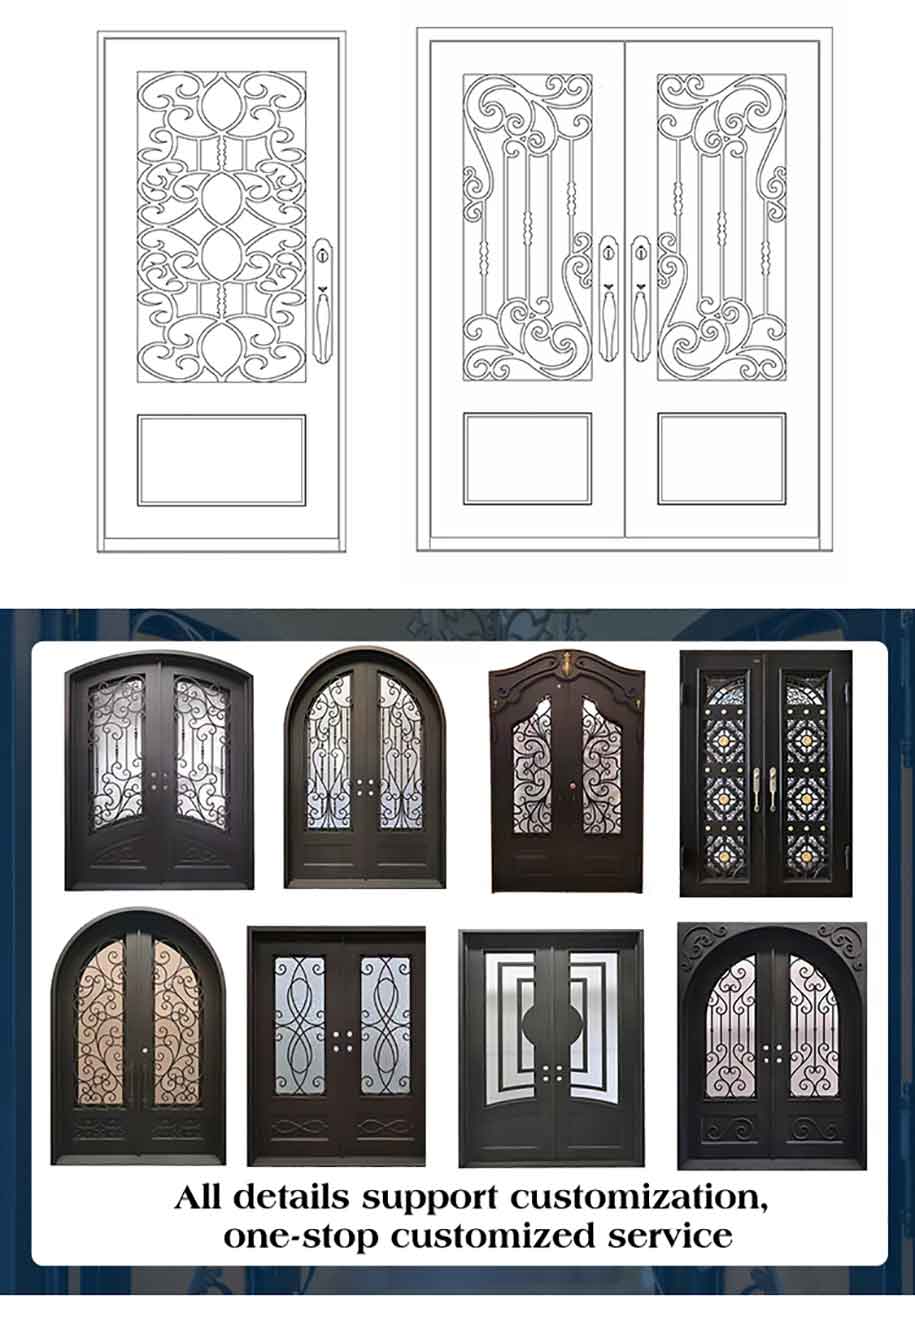 representative iron gate door of different designs